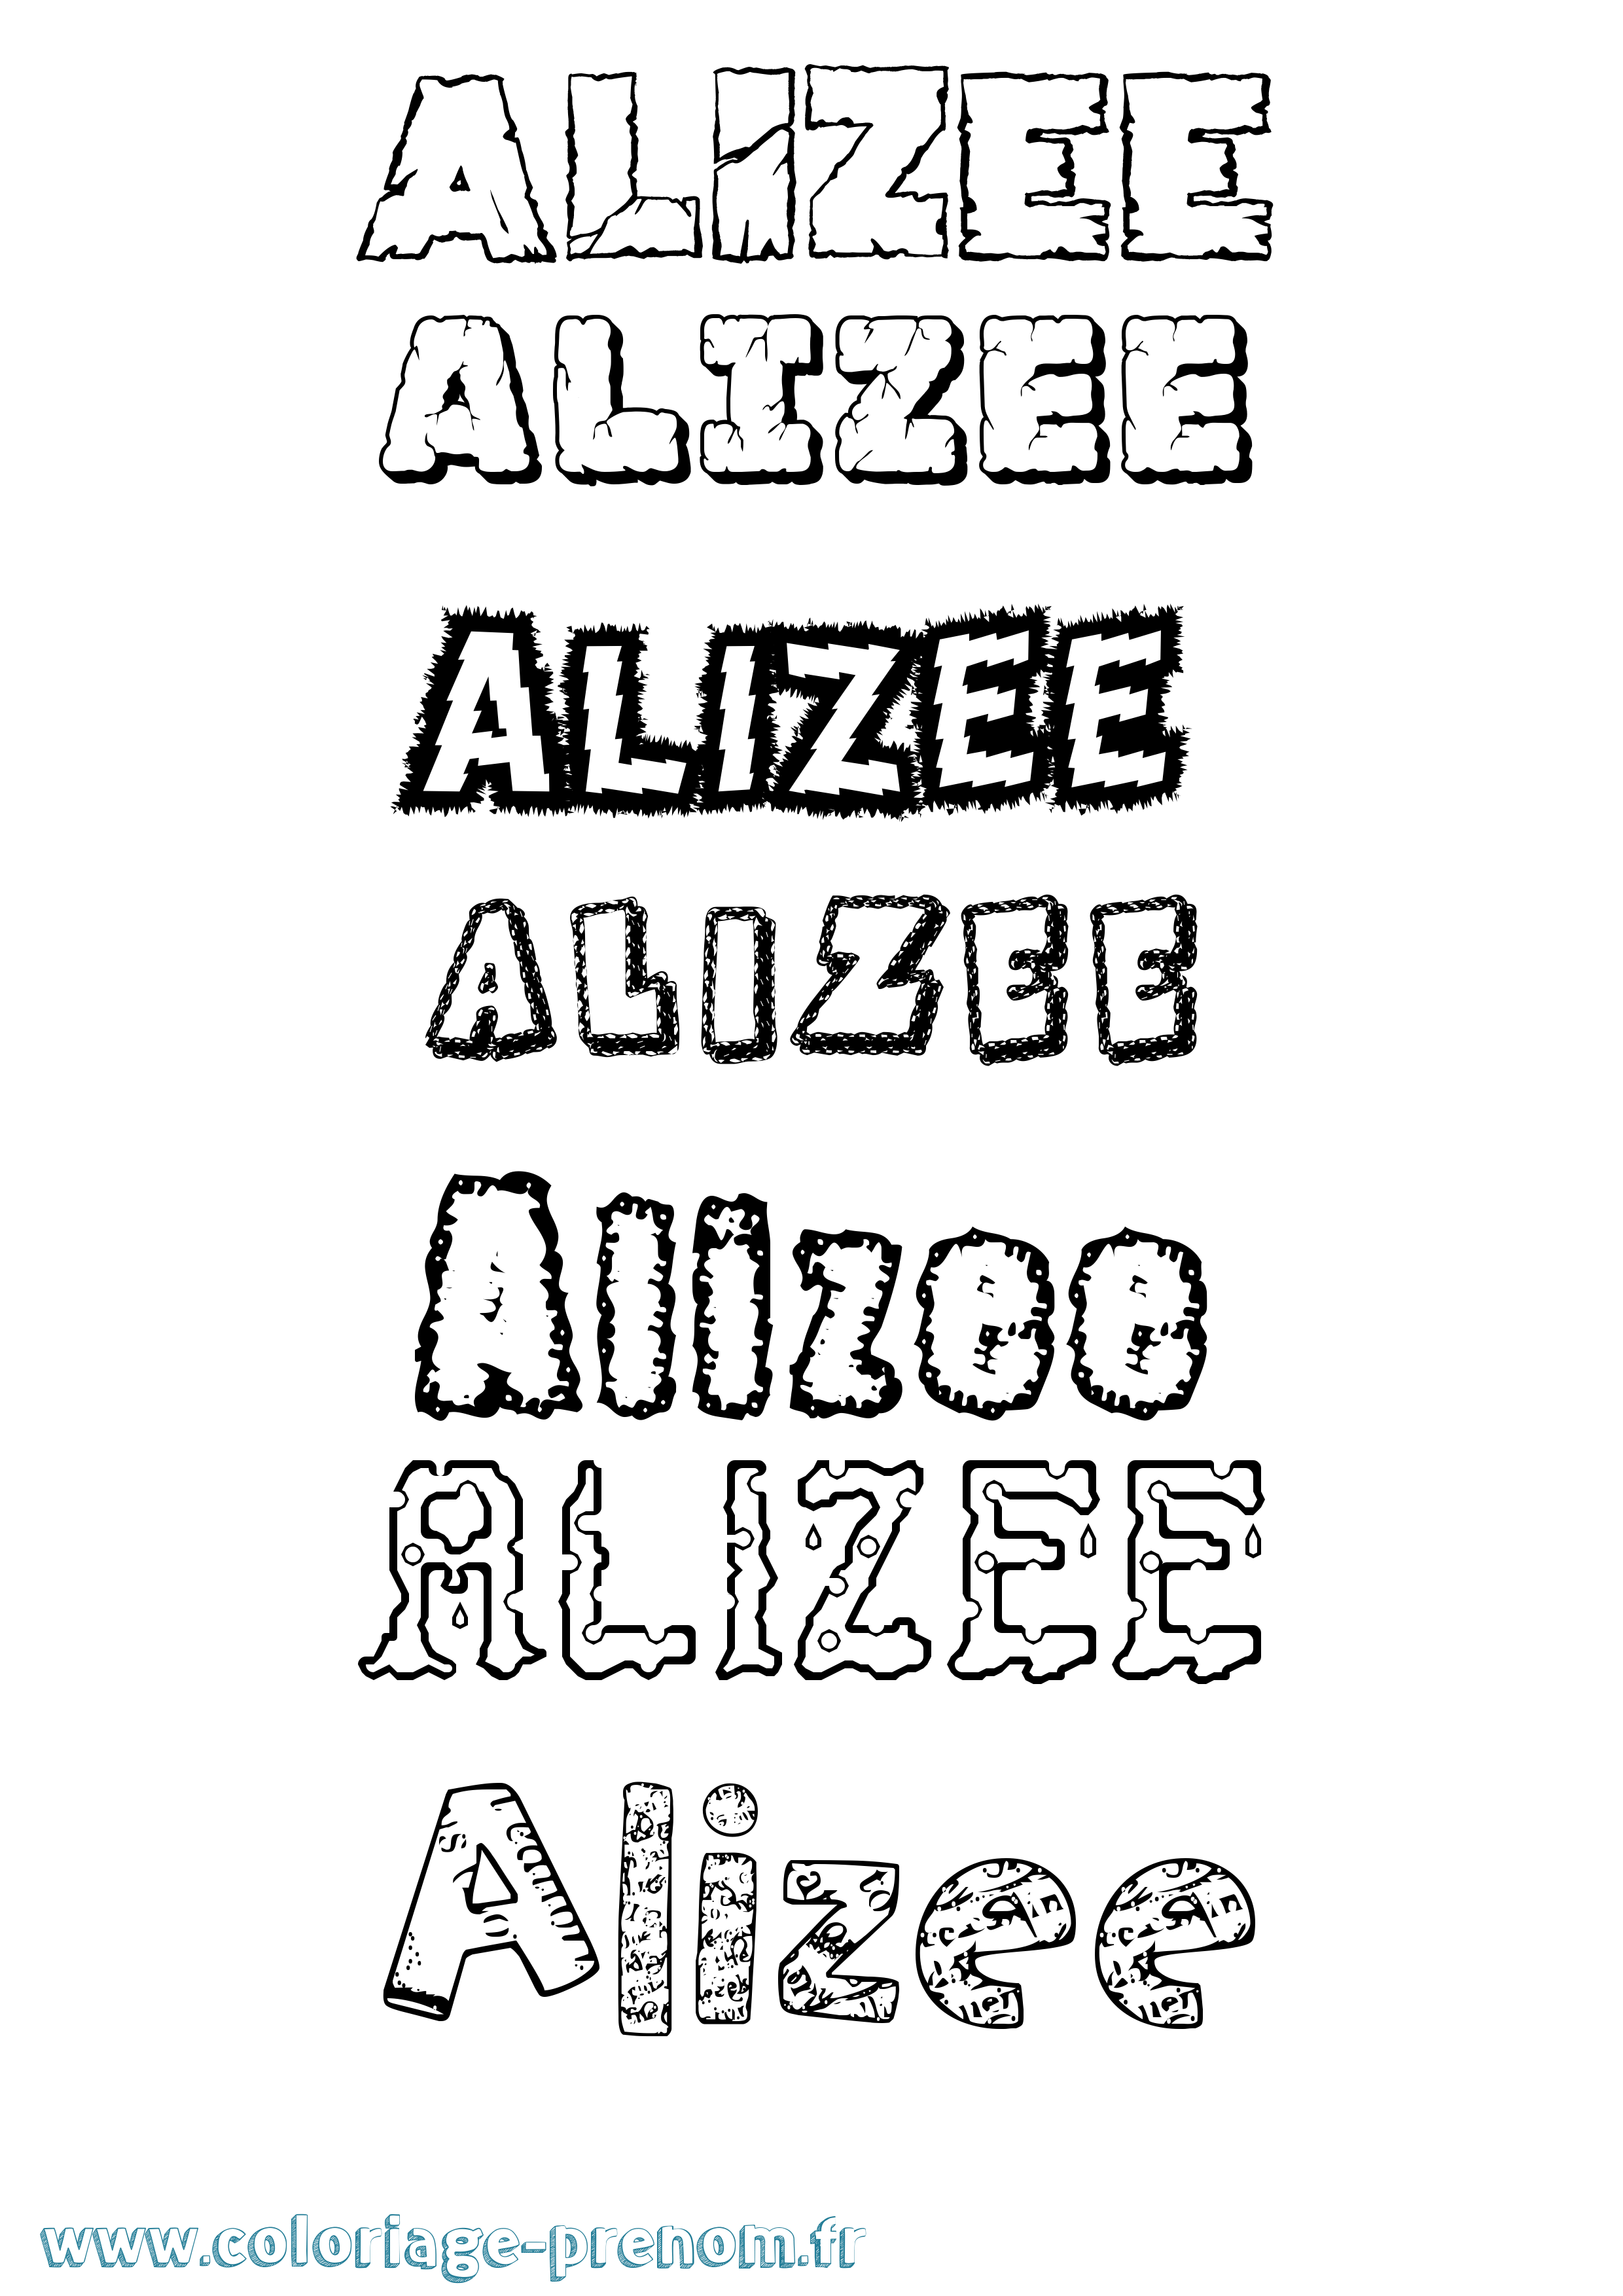 Coloriage prénom Alizee Destructuré